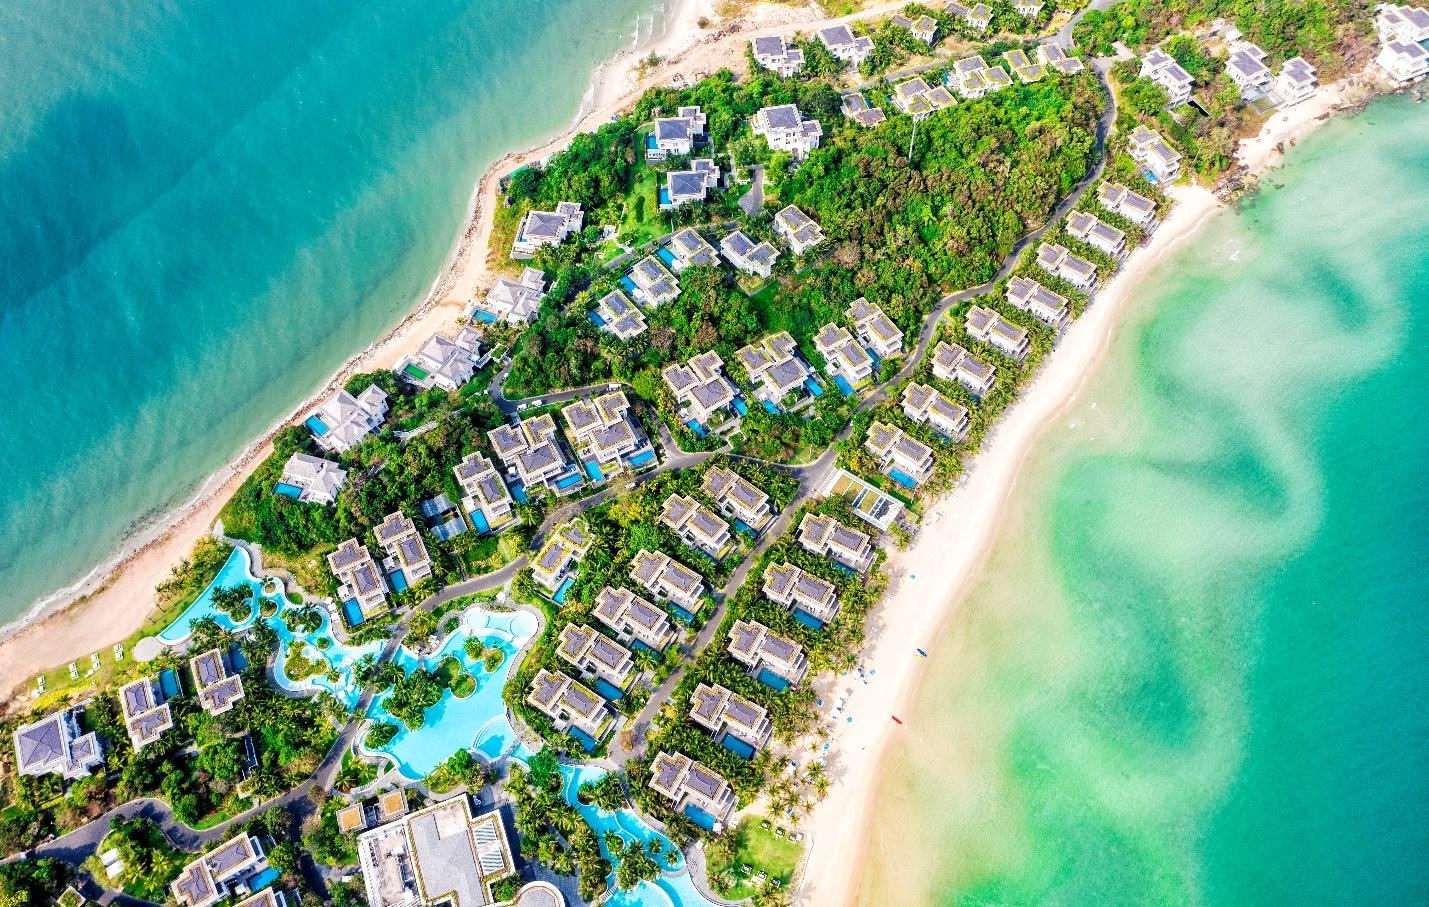 Chiêm ngưỡng những khu nghỉ dưỡng danh giá thế giới khắp 3 miền của Tập đoàn du lịch hàng đầu châu Á - Sun Group-1